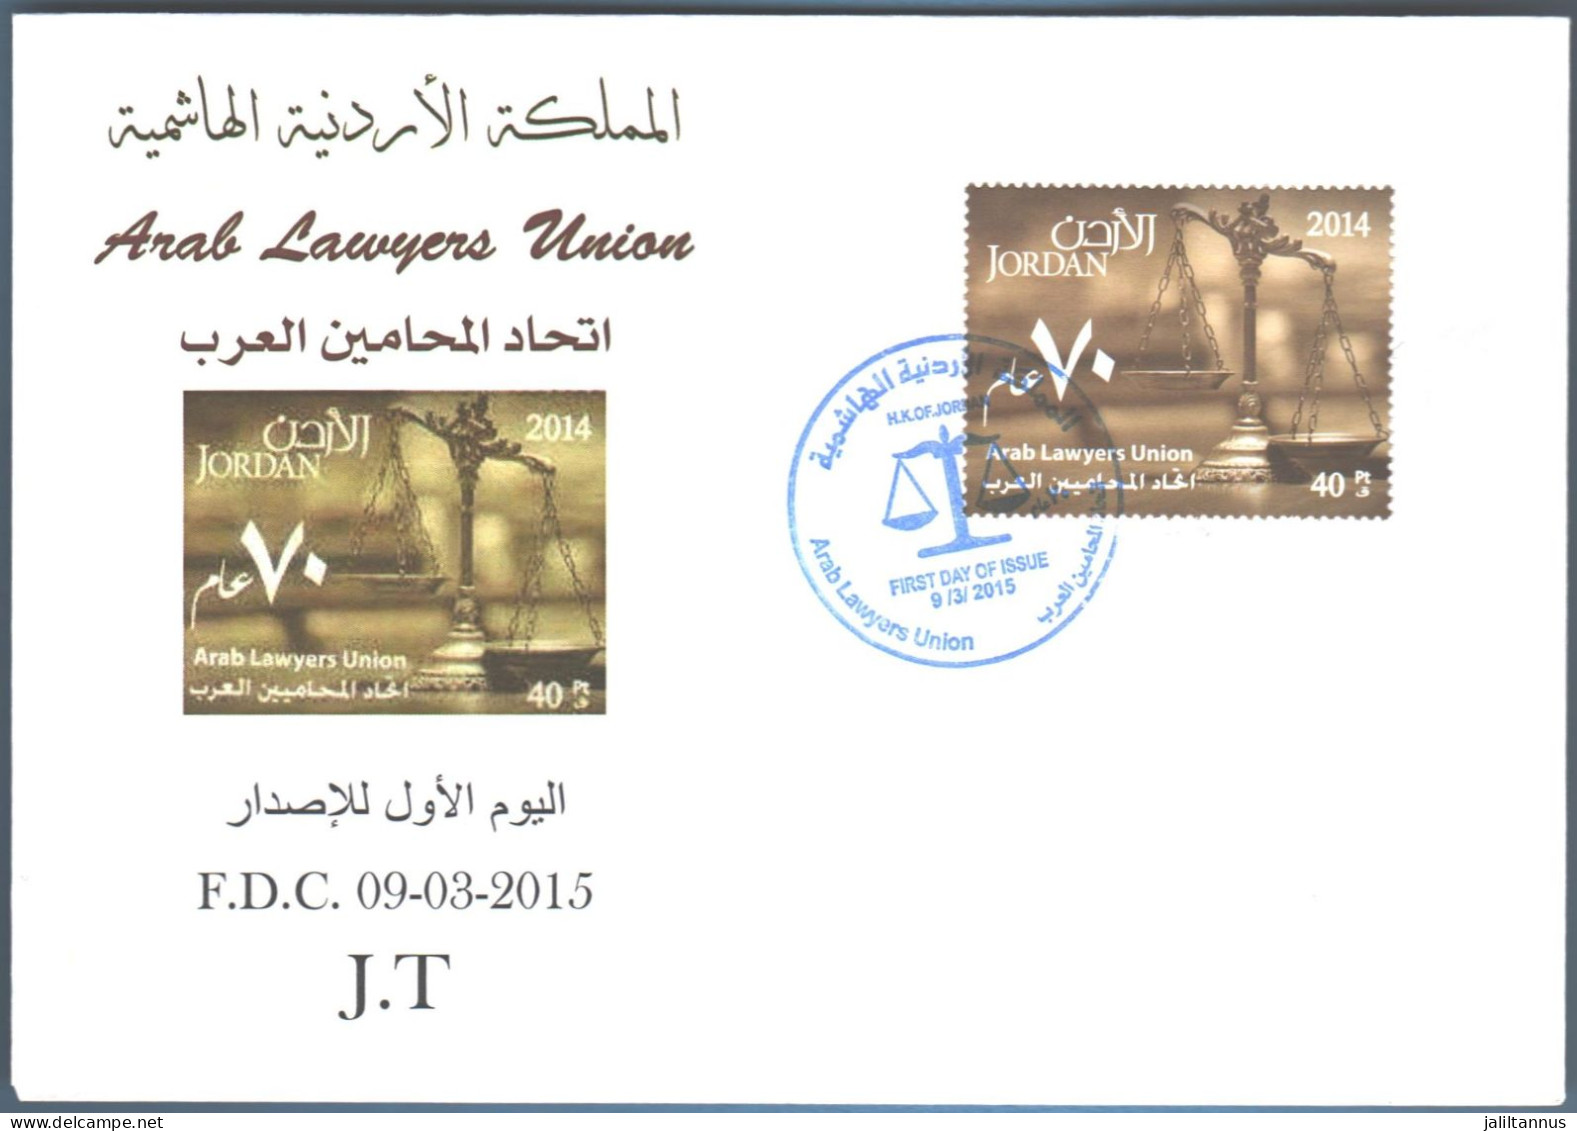 FDC Envelope ARAB LAWYERS UNION 2015 - Jordania